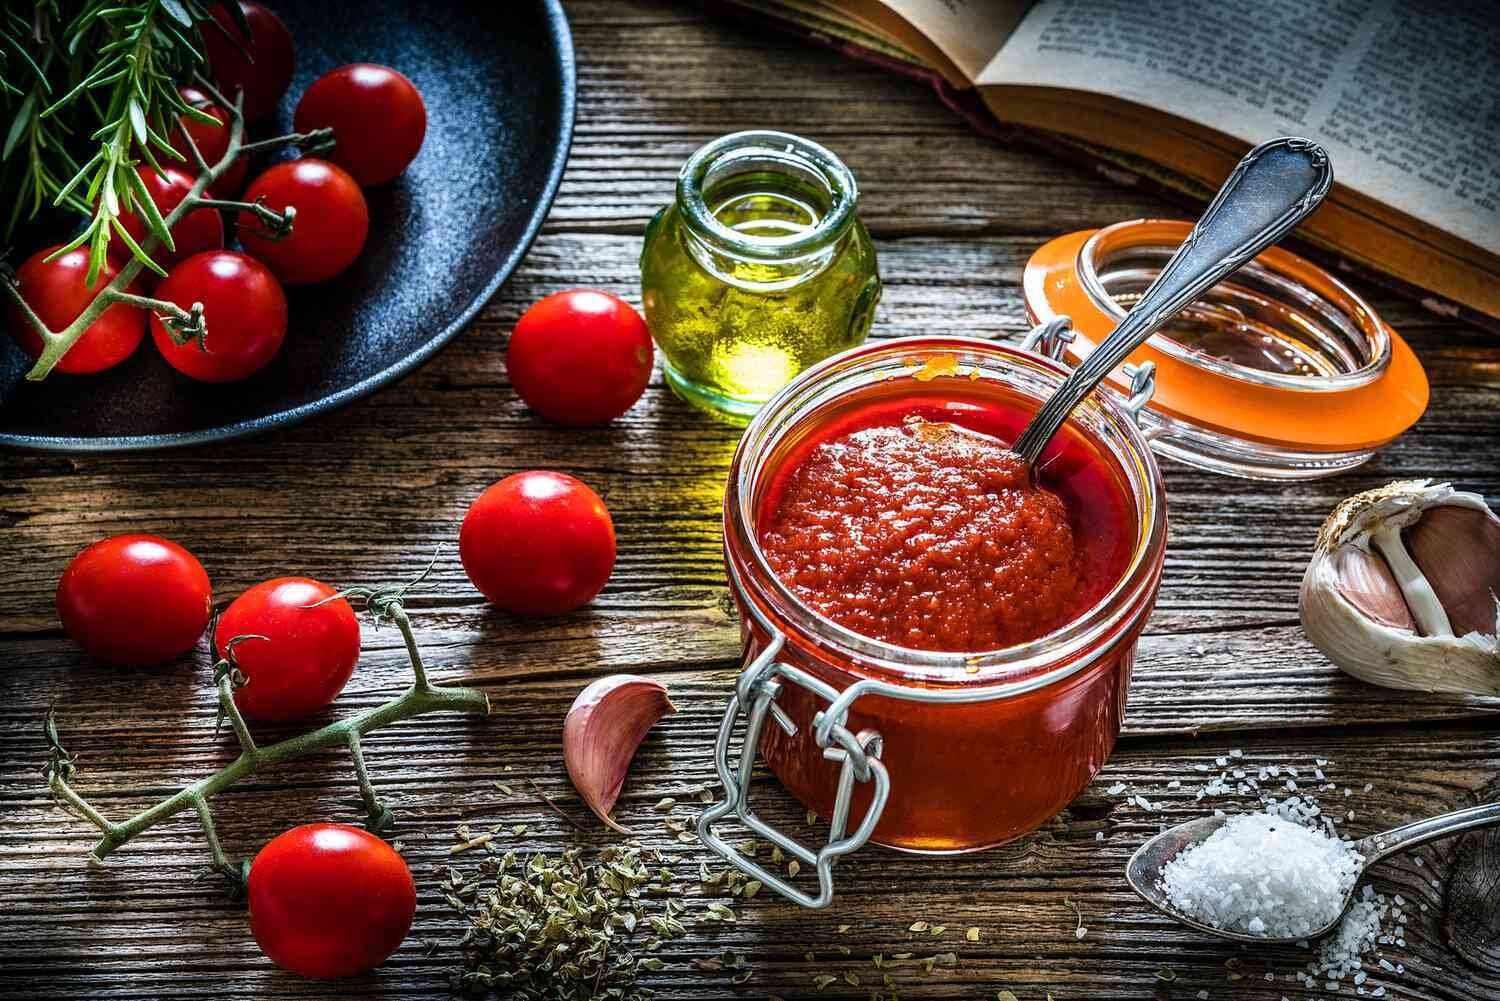 Tiêu thụ cà chua và các sản phẩm từ cà chua có thể giúp phòng ngừa đột quỵ. (Ảnh: Getty)